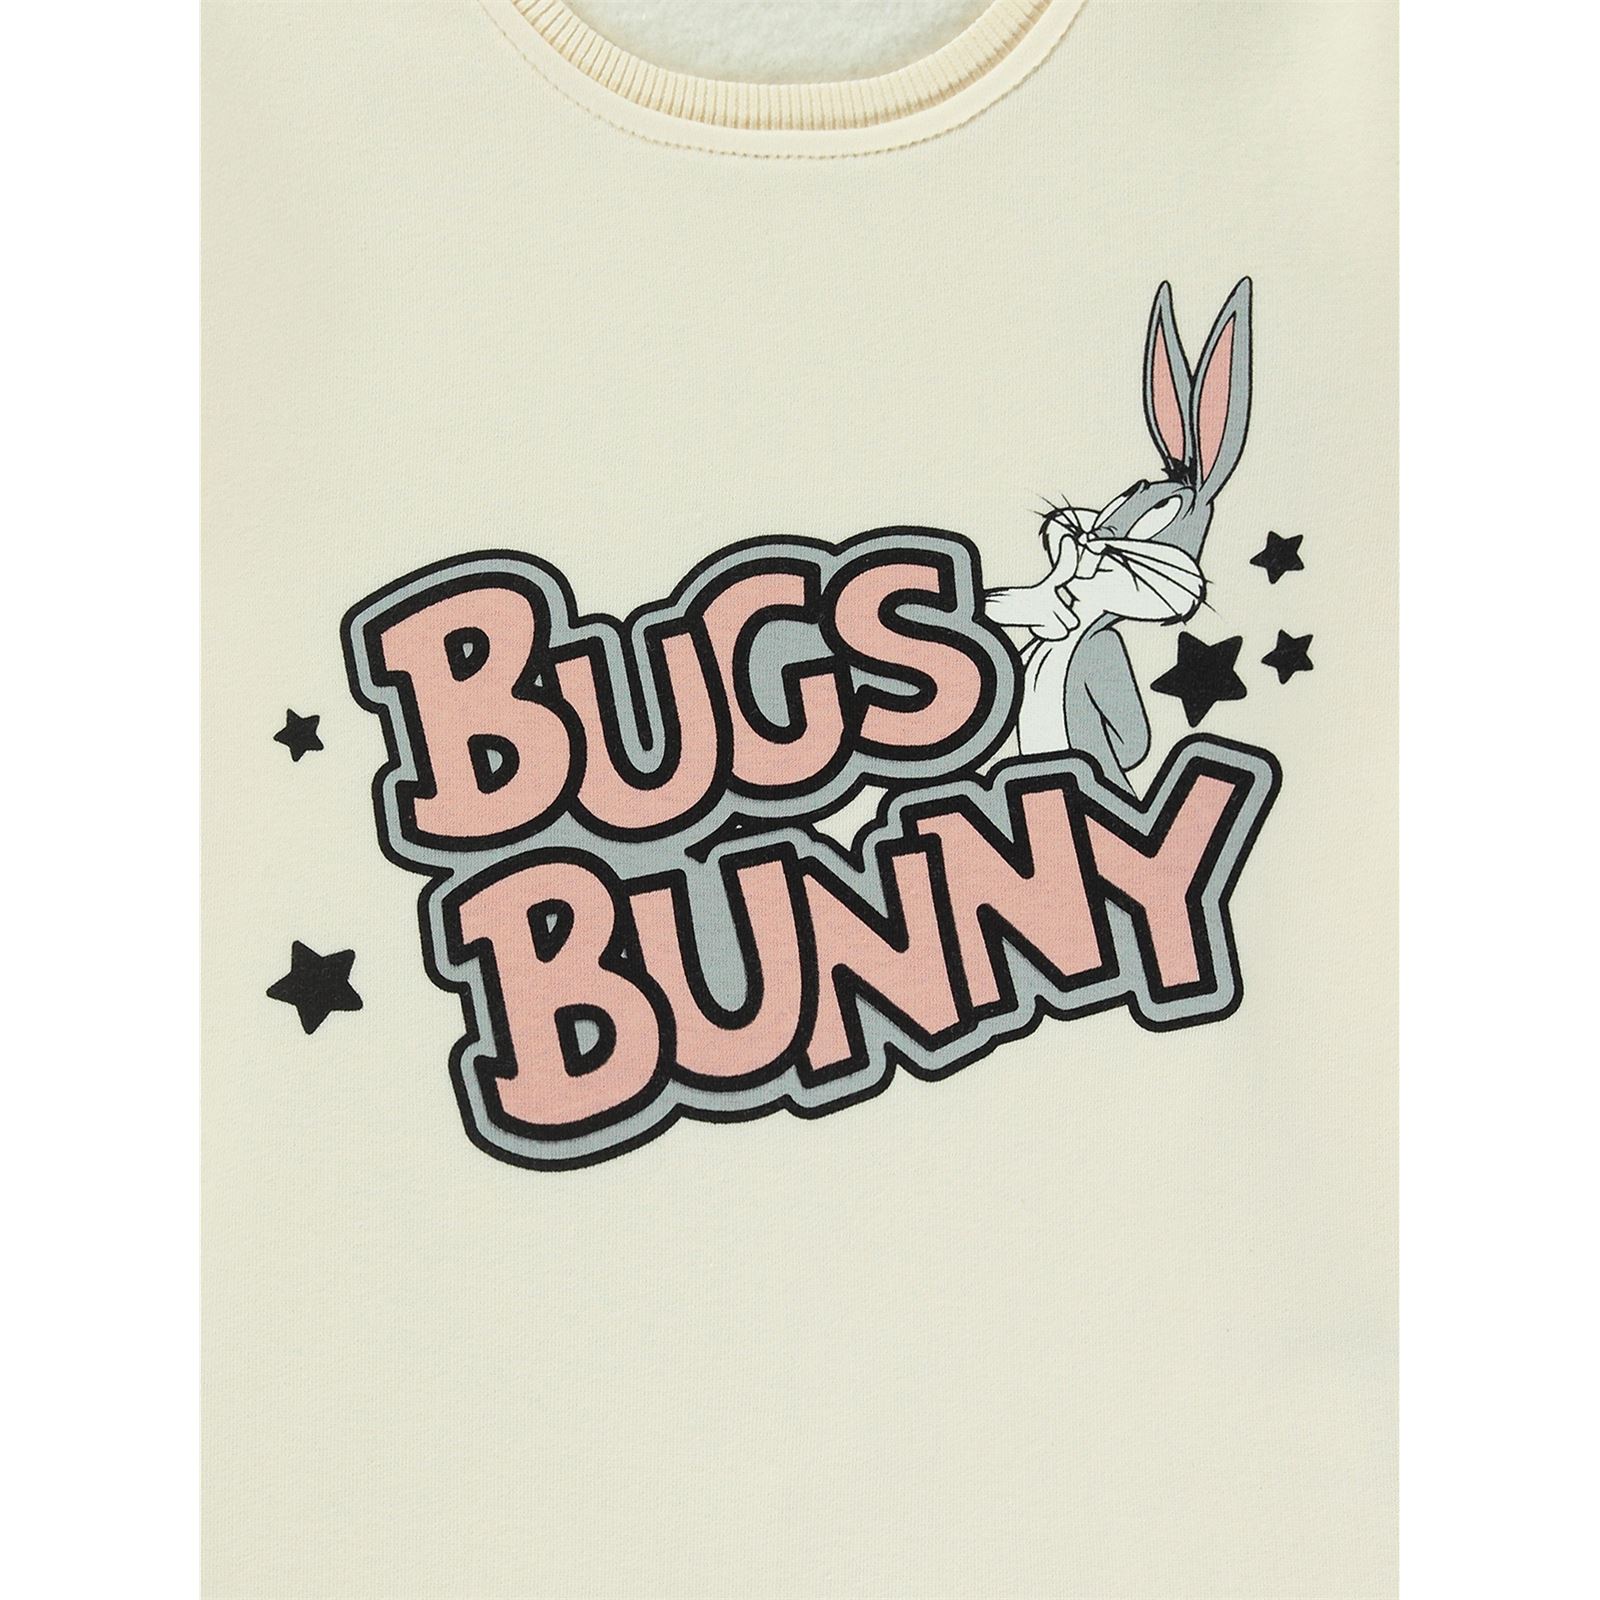 Bugs Bunny Kız Çocuk Sweatshirt 10-13 Yaş Bej